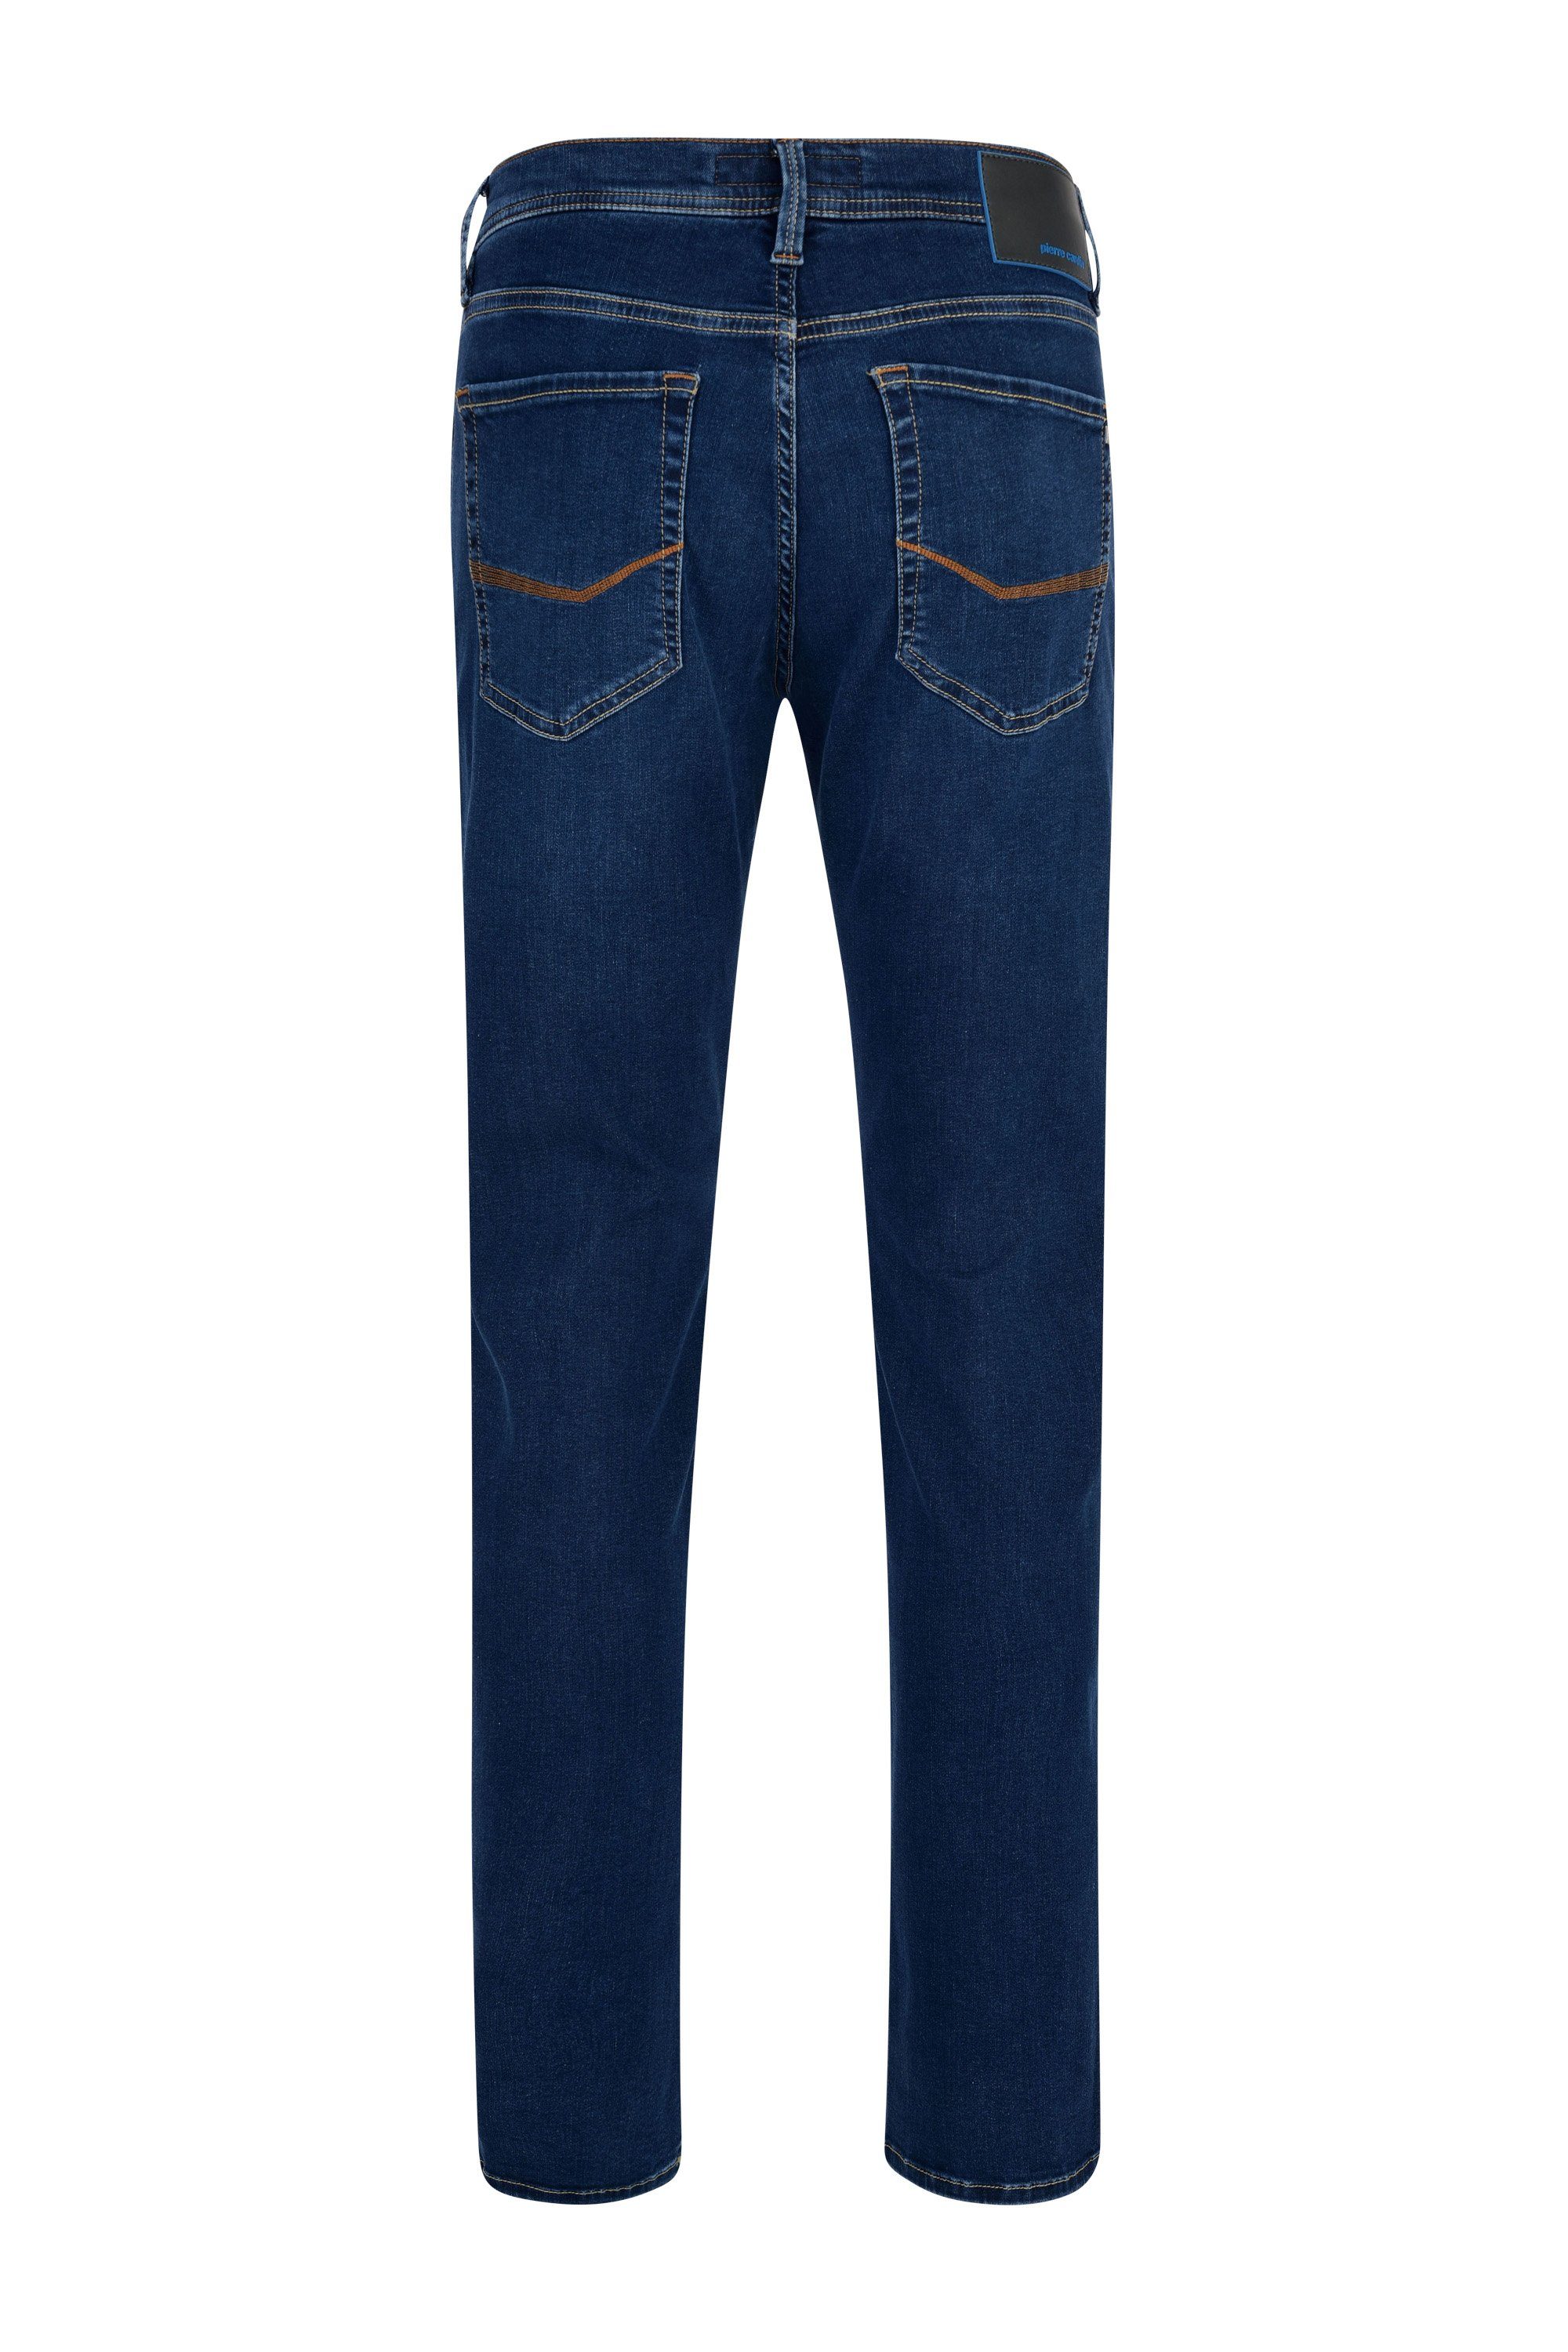 CARDIN 3451 blue used dark 5-Pocket-Jeans LYON Pierre 8880.51 PIERRE FUTUREFLEX buffies Cardin